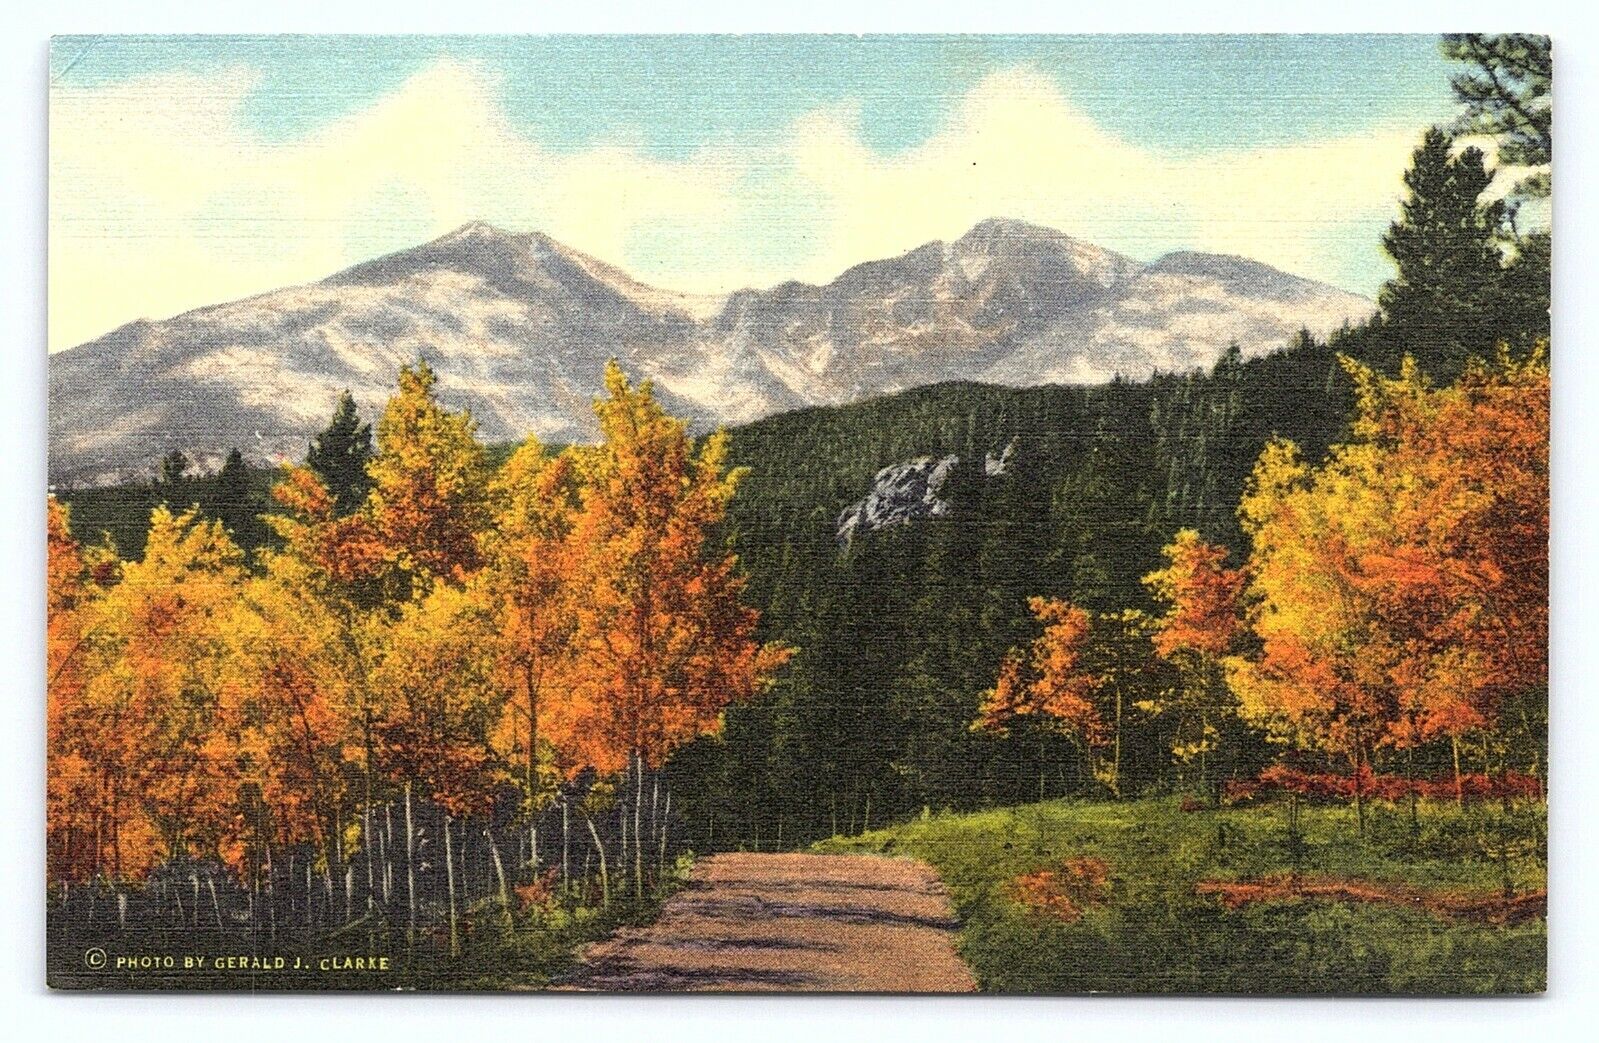 c1940 Longs Peak Framed by Aspens Rocky Mountain Ntl Park CO Linen Postcard C22